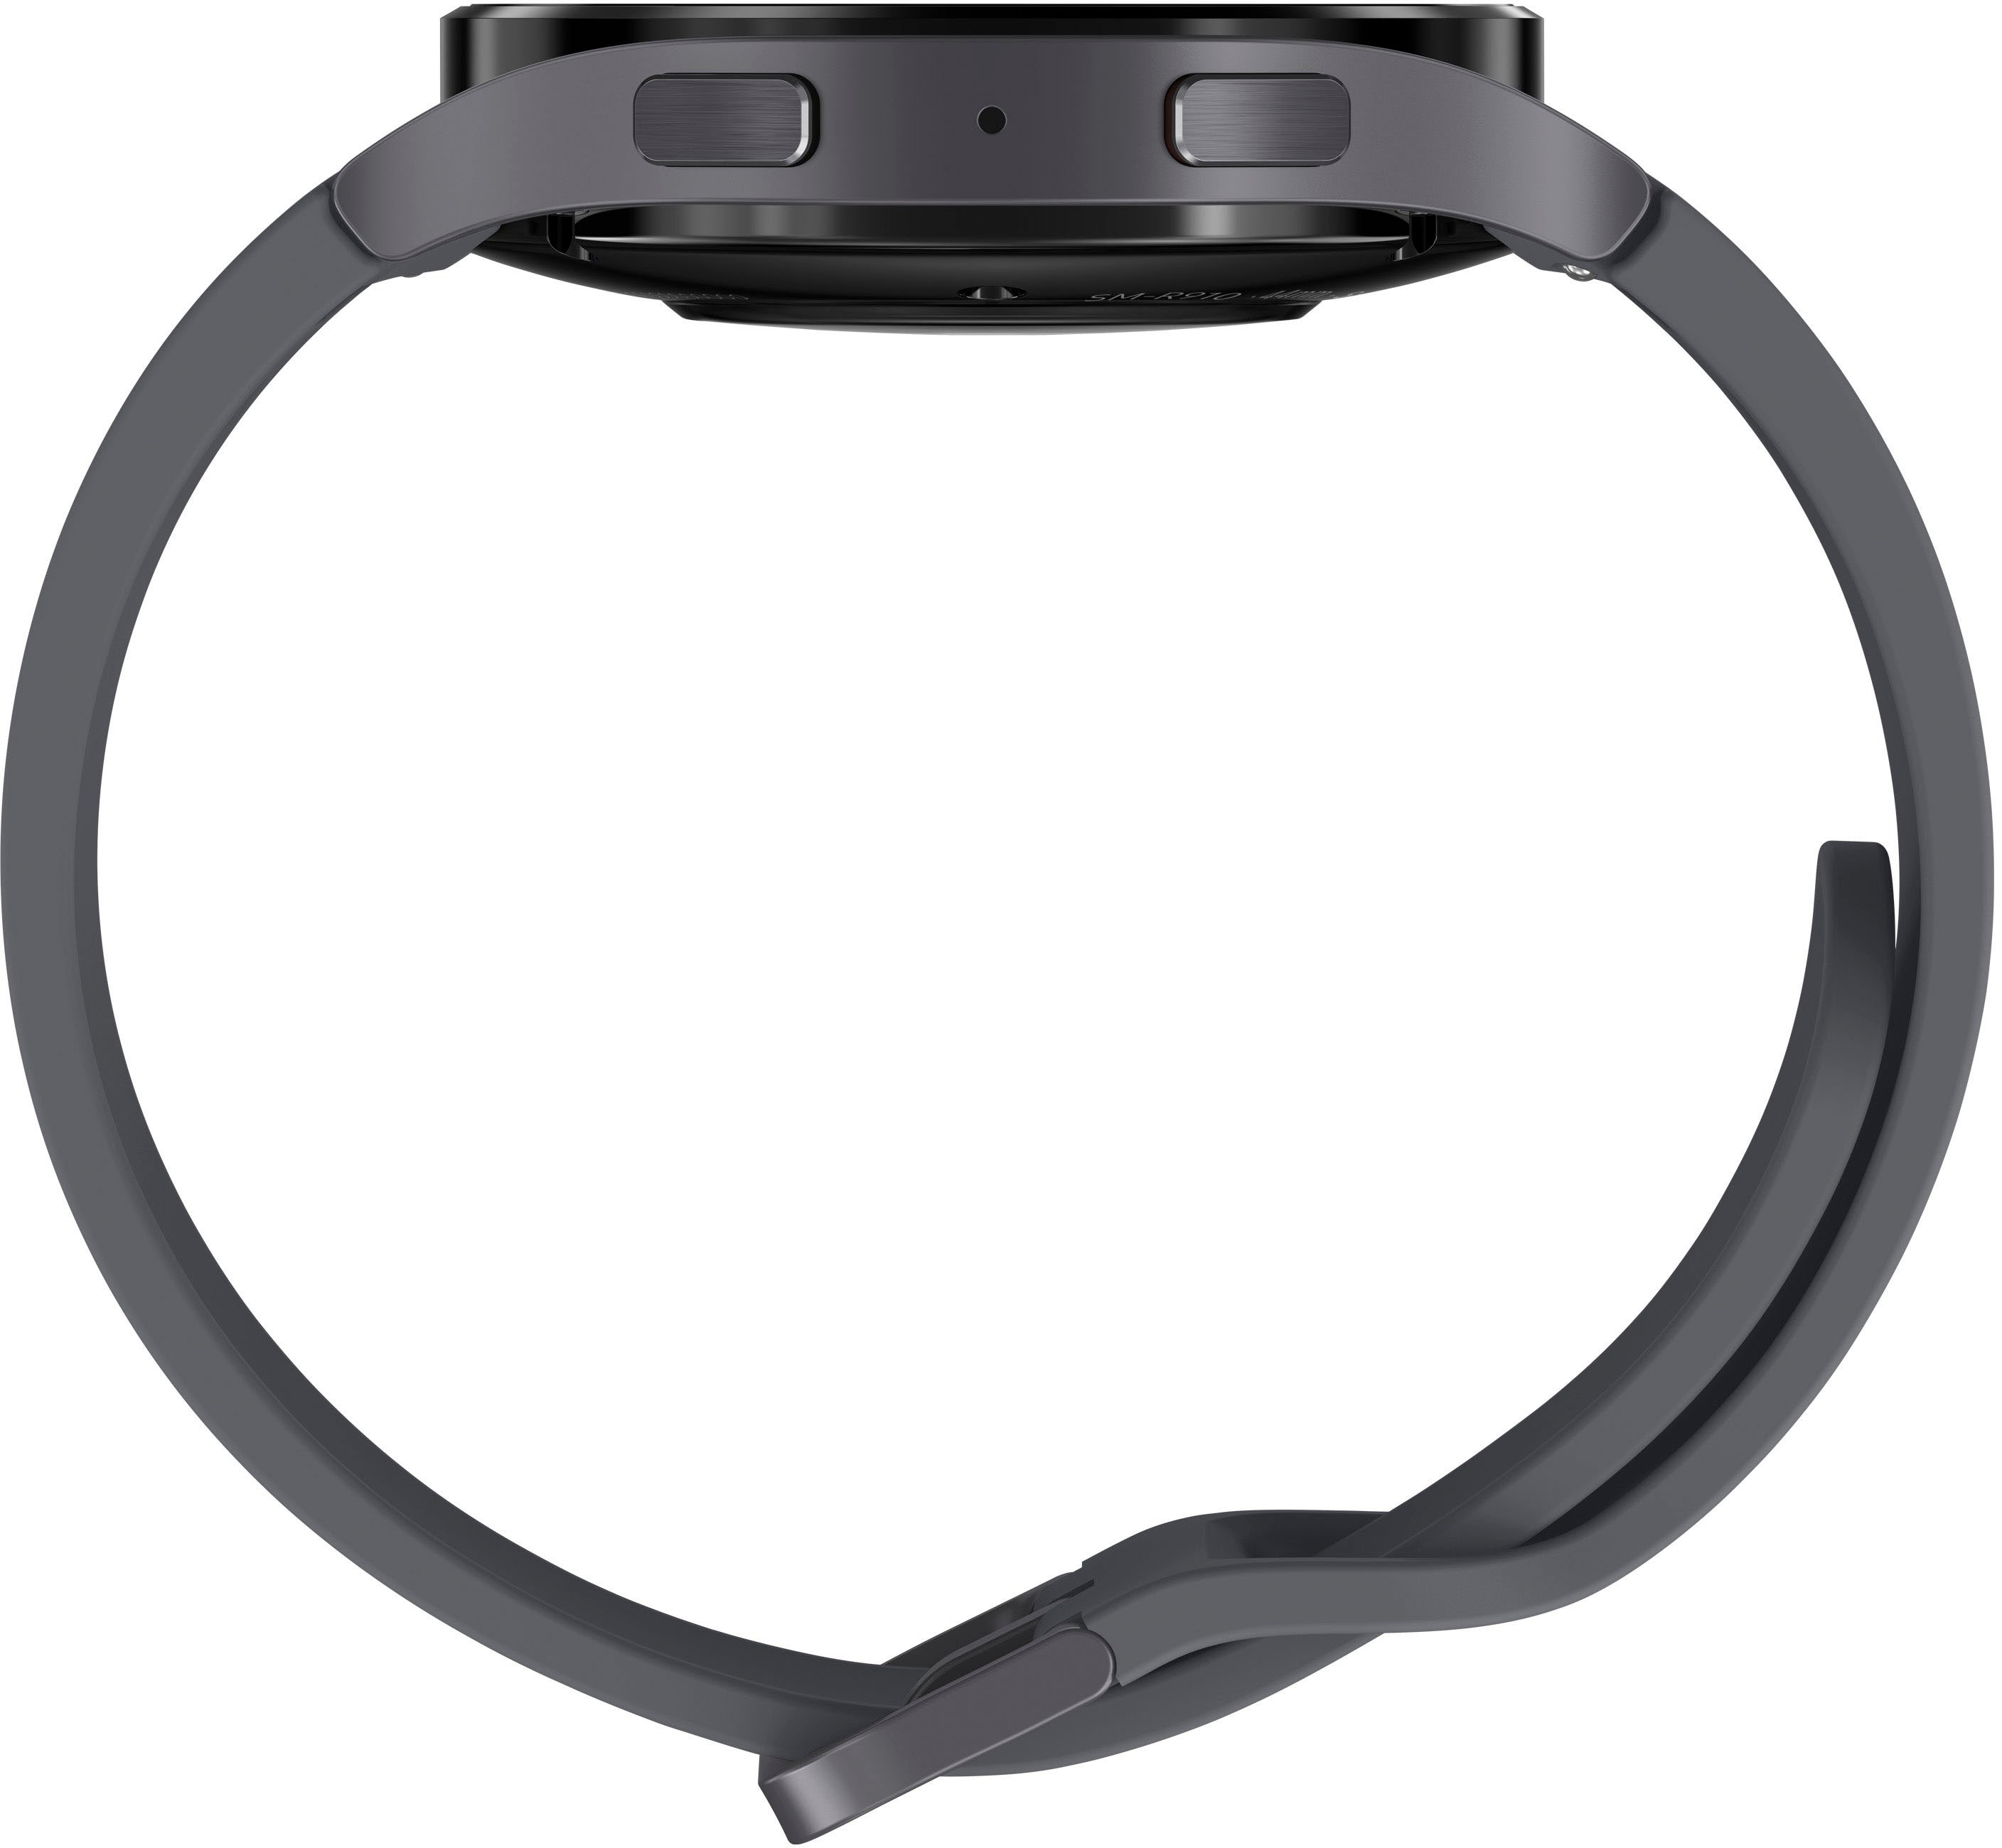 Comment mesurer l'ECG et la tension artérielle sur la Galaxy Watch de  Samsung - Blogue Best Buy